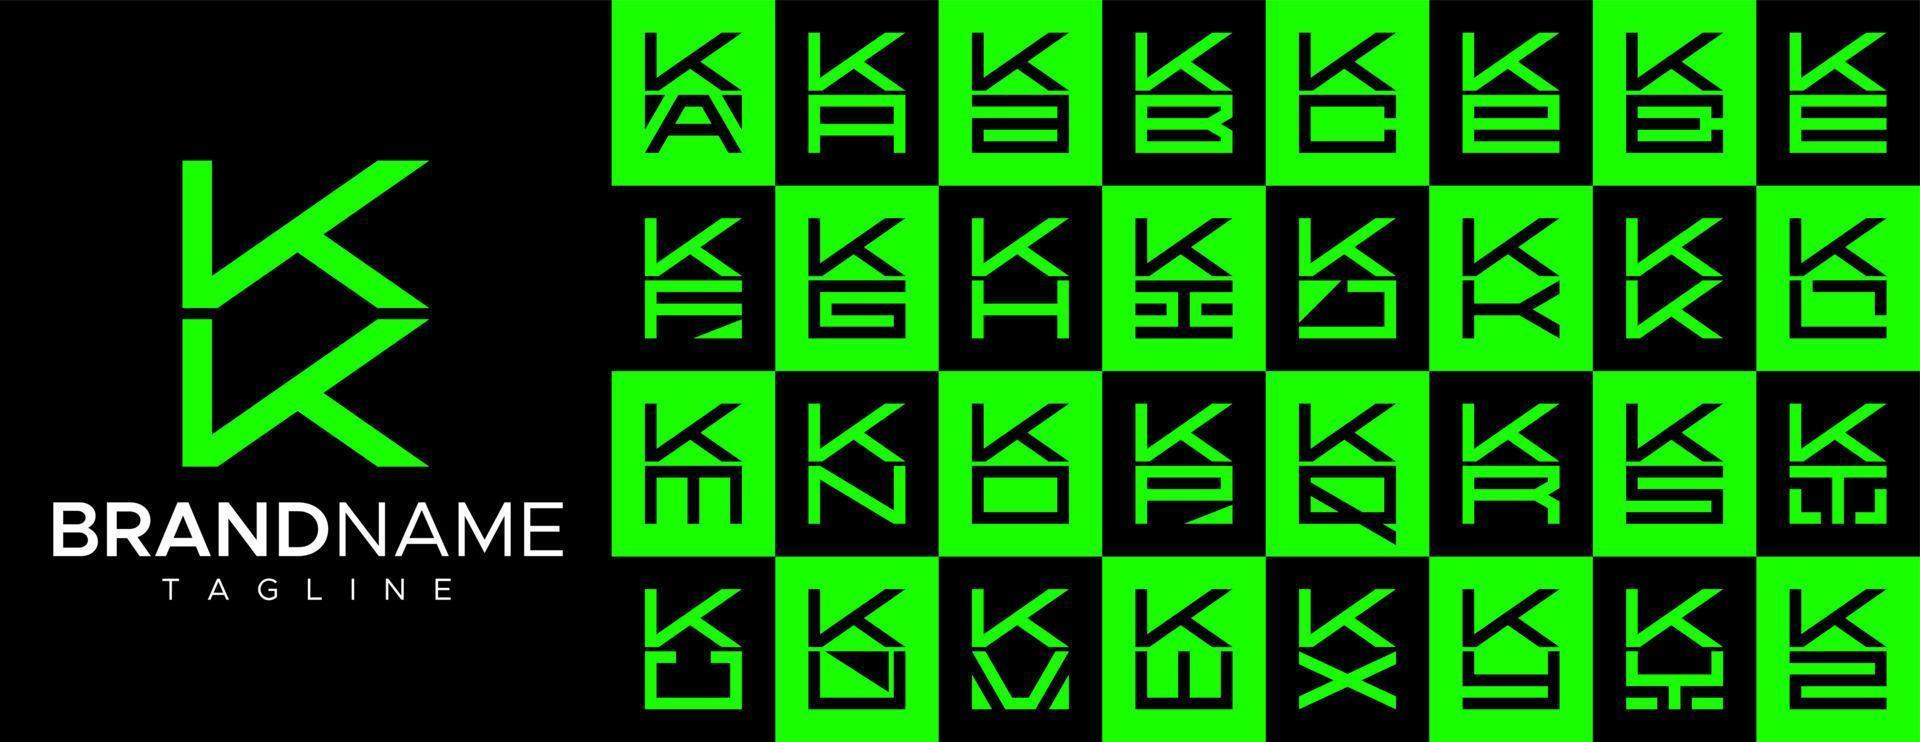 Simple square letter K KK logo design set. Modern box initial K logo branding. vector